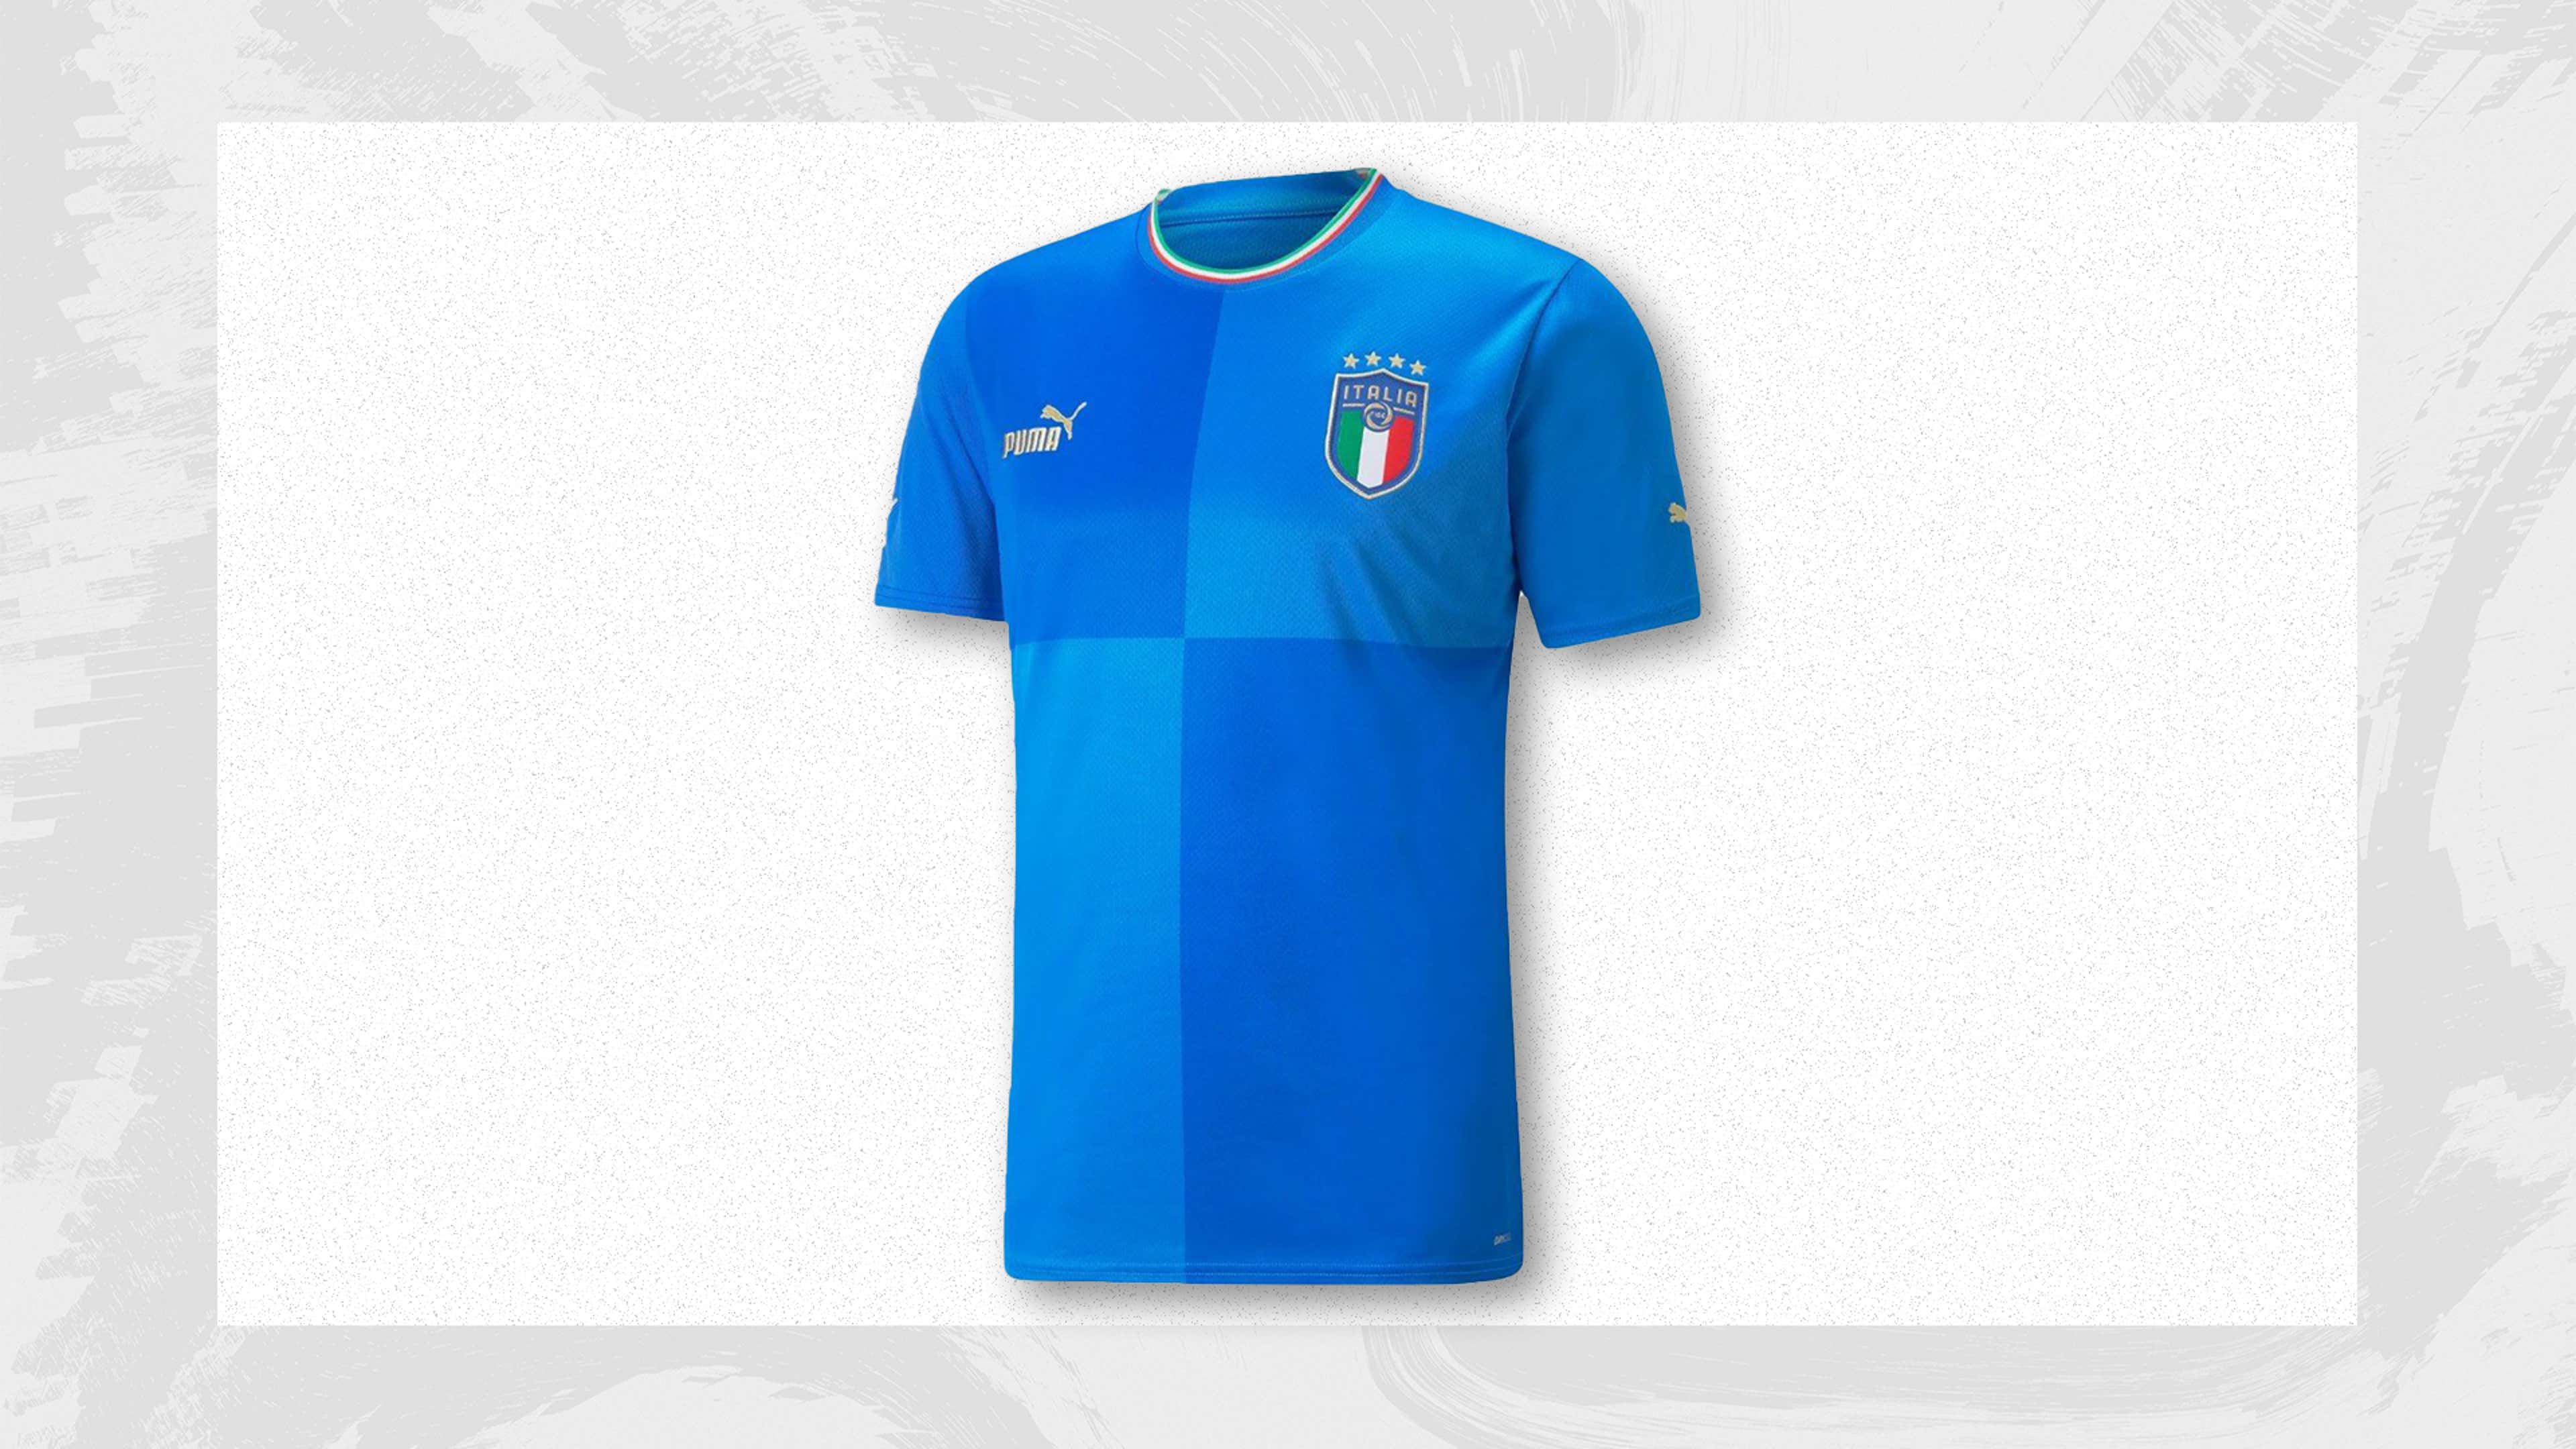 Football teams shirt and kits fan: Italy World Cup 2006 kits